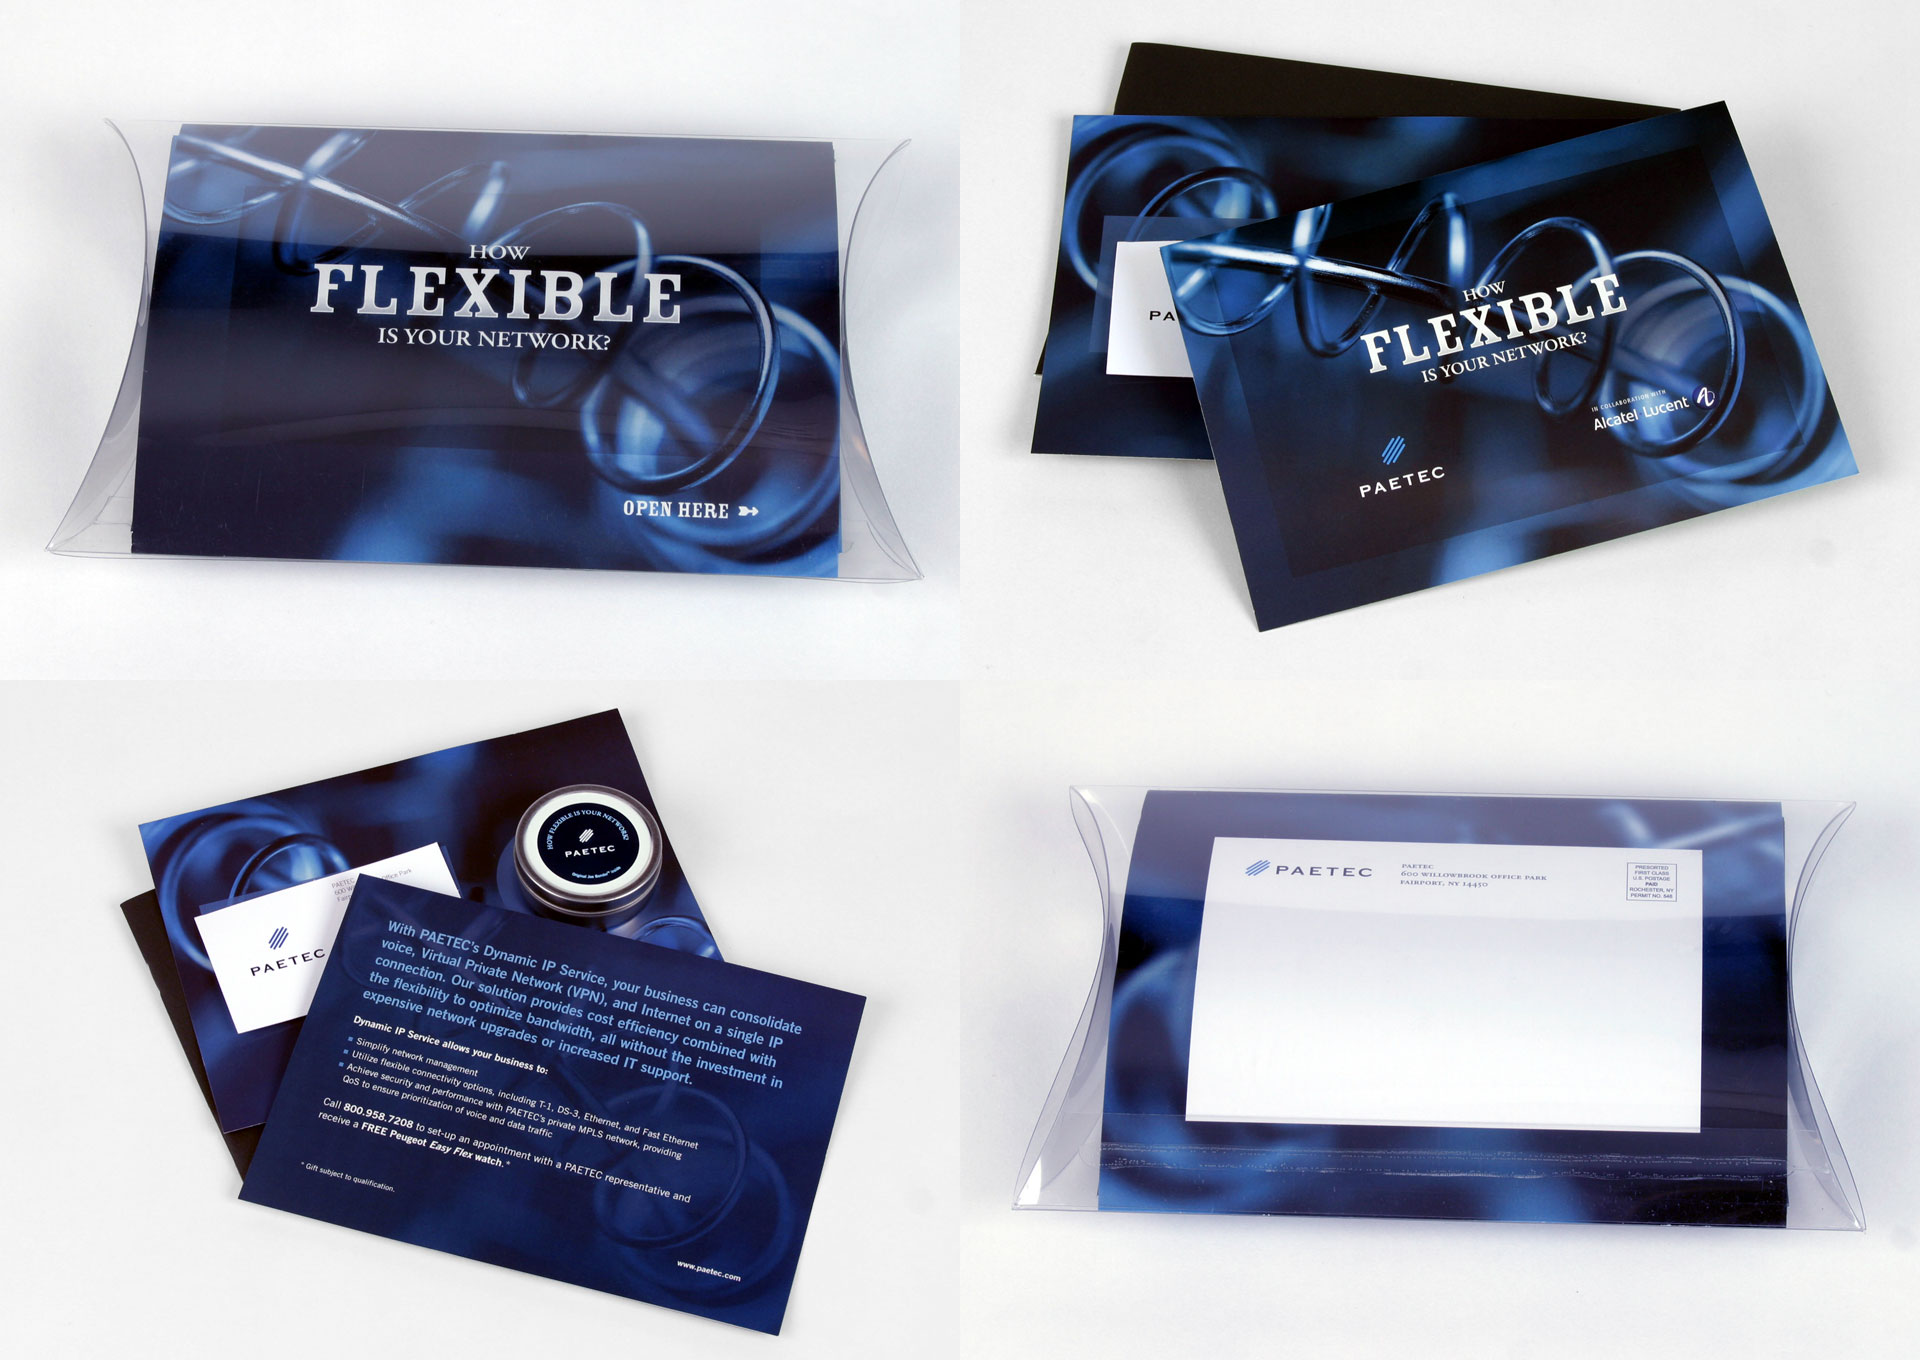 PAETEC Flexible Campaign